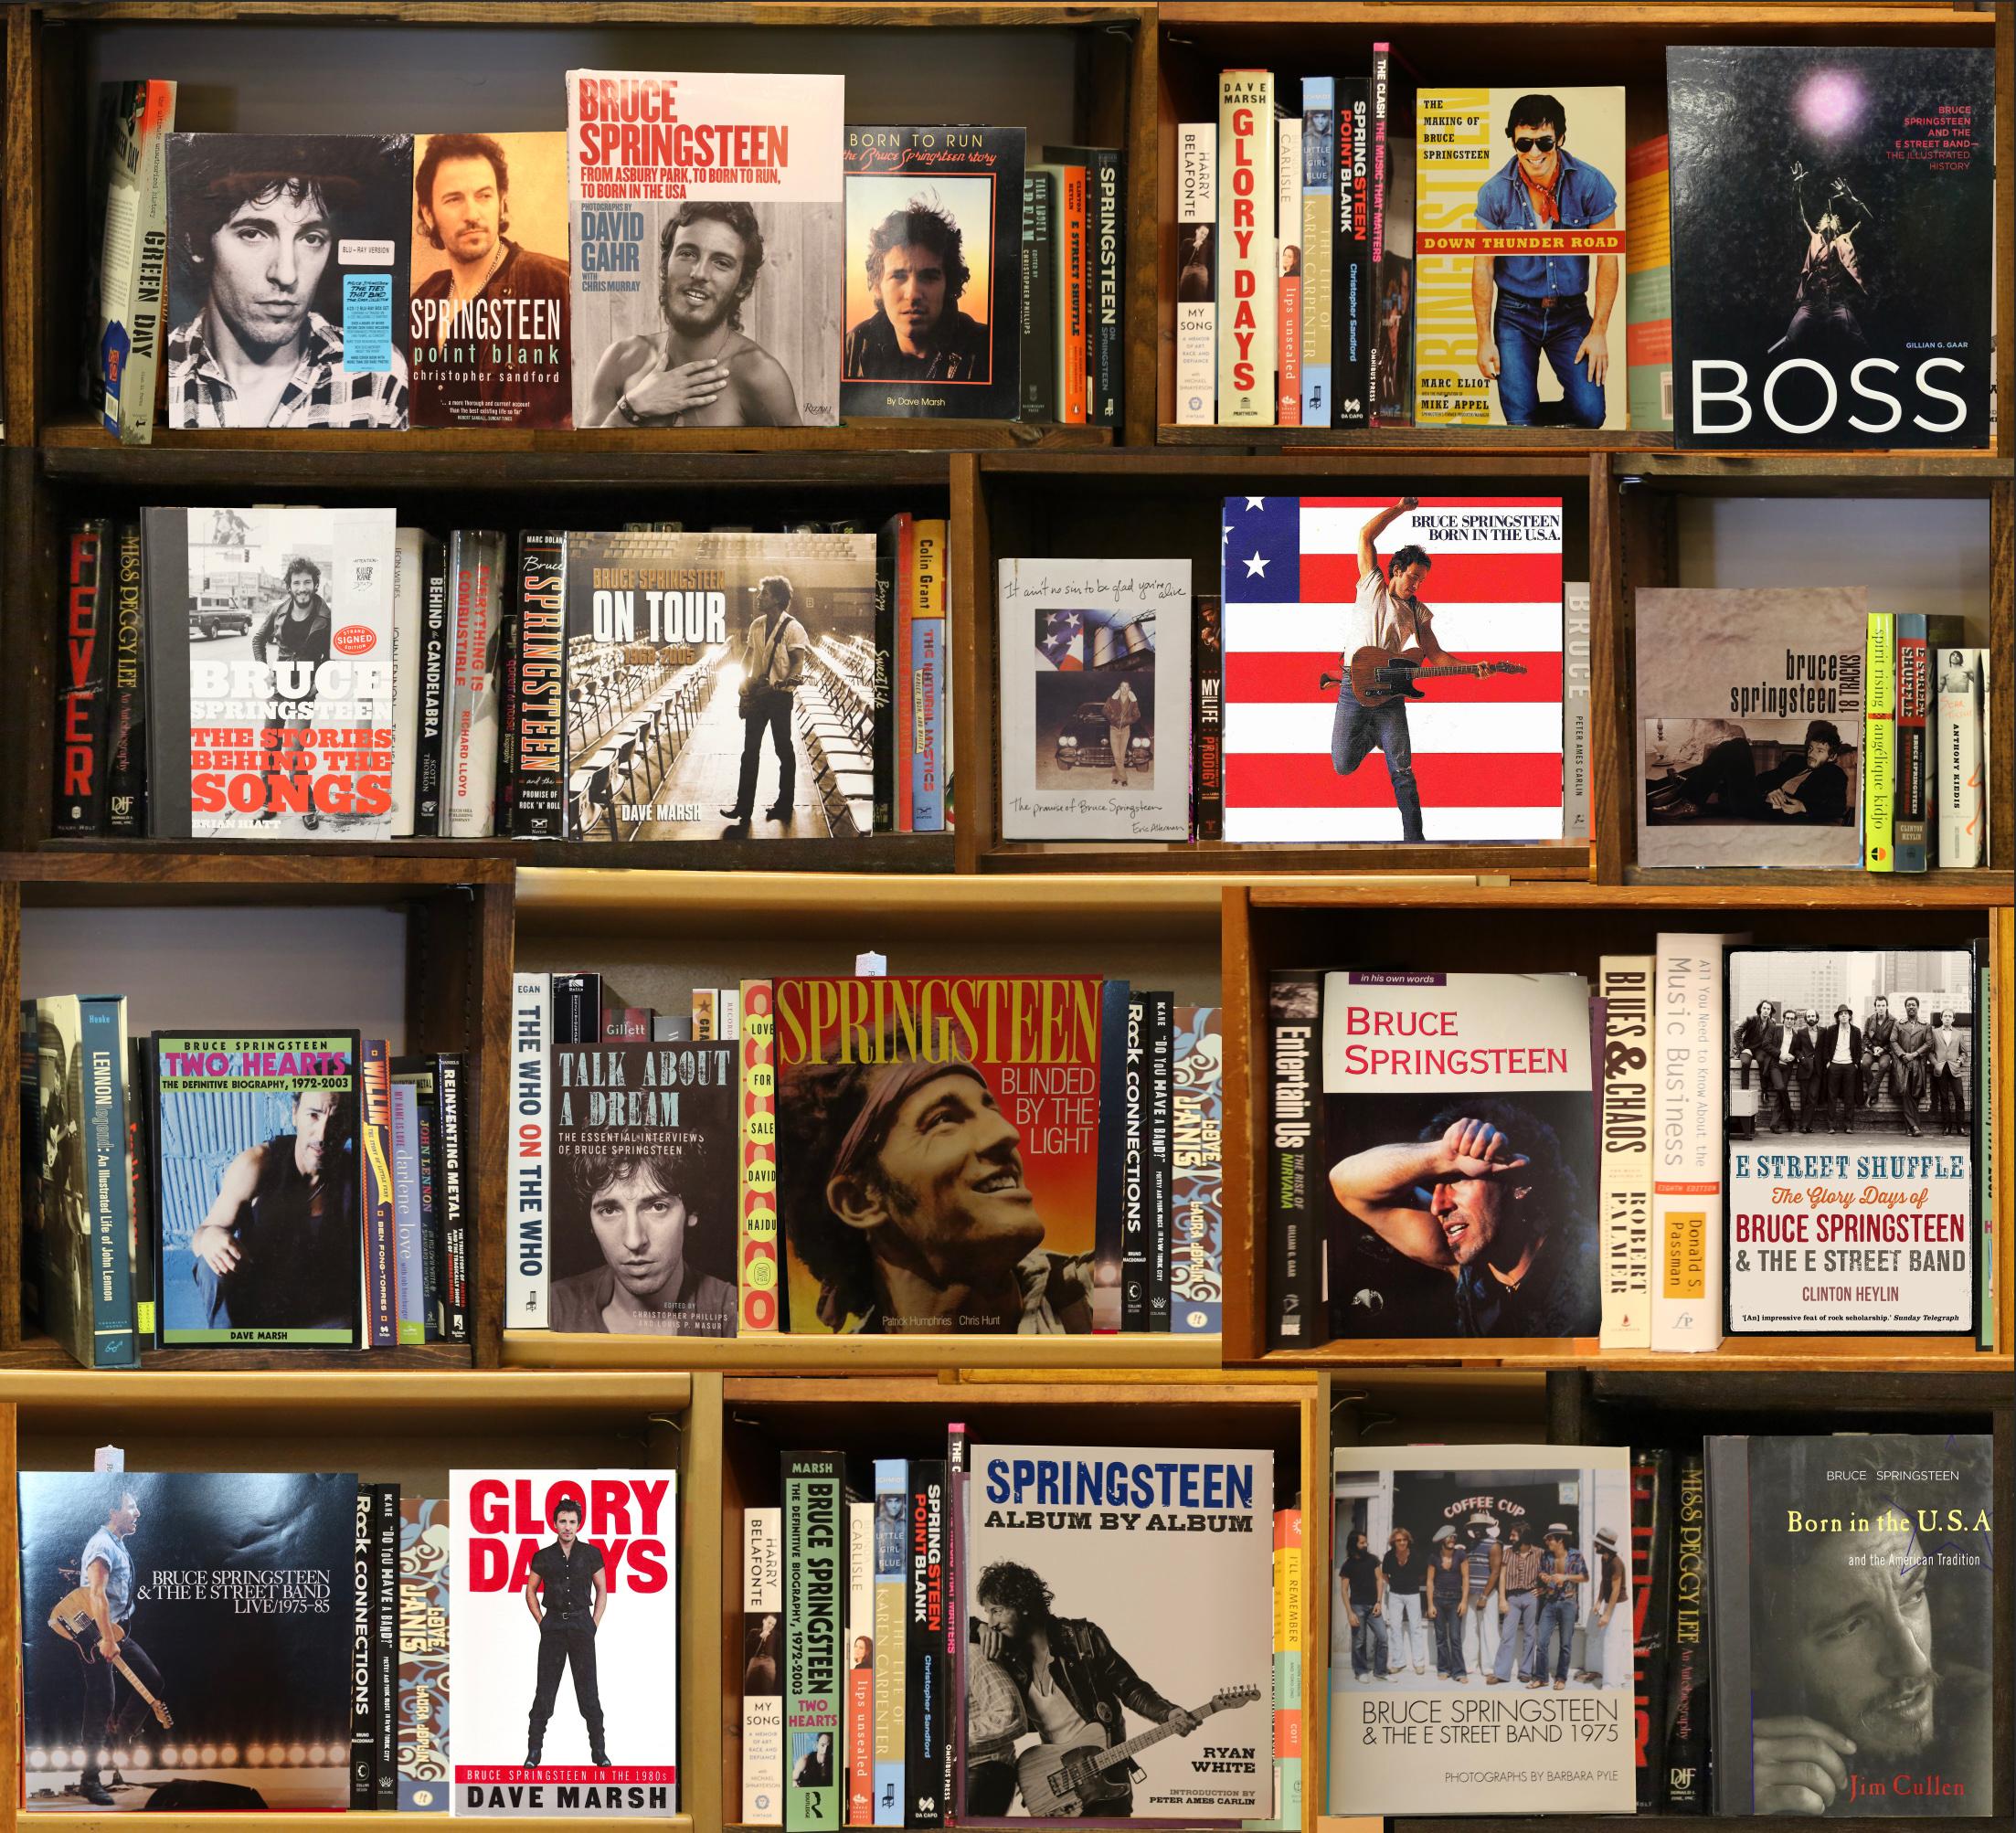 Boss (Bruce Springsteen) 4/5 BookScape von Max Steven Grossman 

Individuell fotografierte Bücher und Bücherregale. Mit Büchern und Alben von Bruce Springsteen. 

In seiner Fotoserie "Bookscapes" existieren die versammelten Bibliotheken nur in